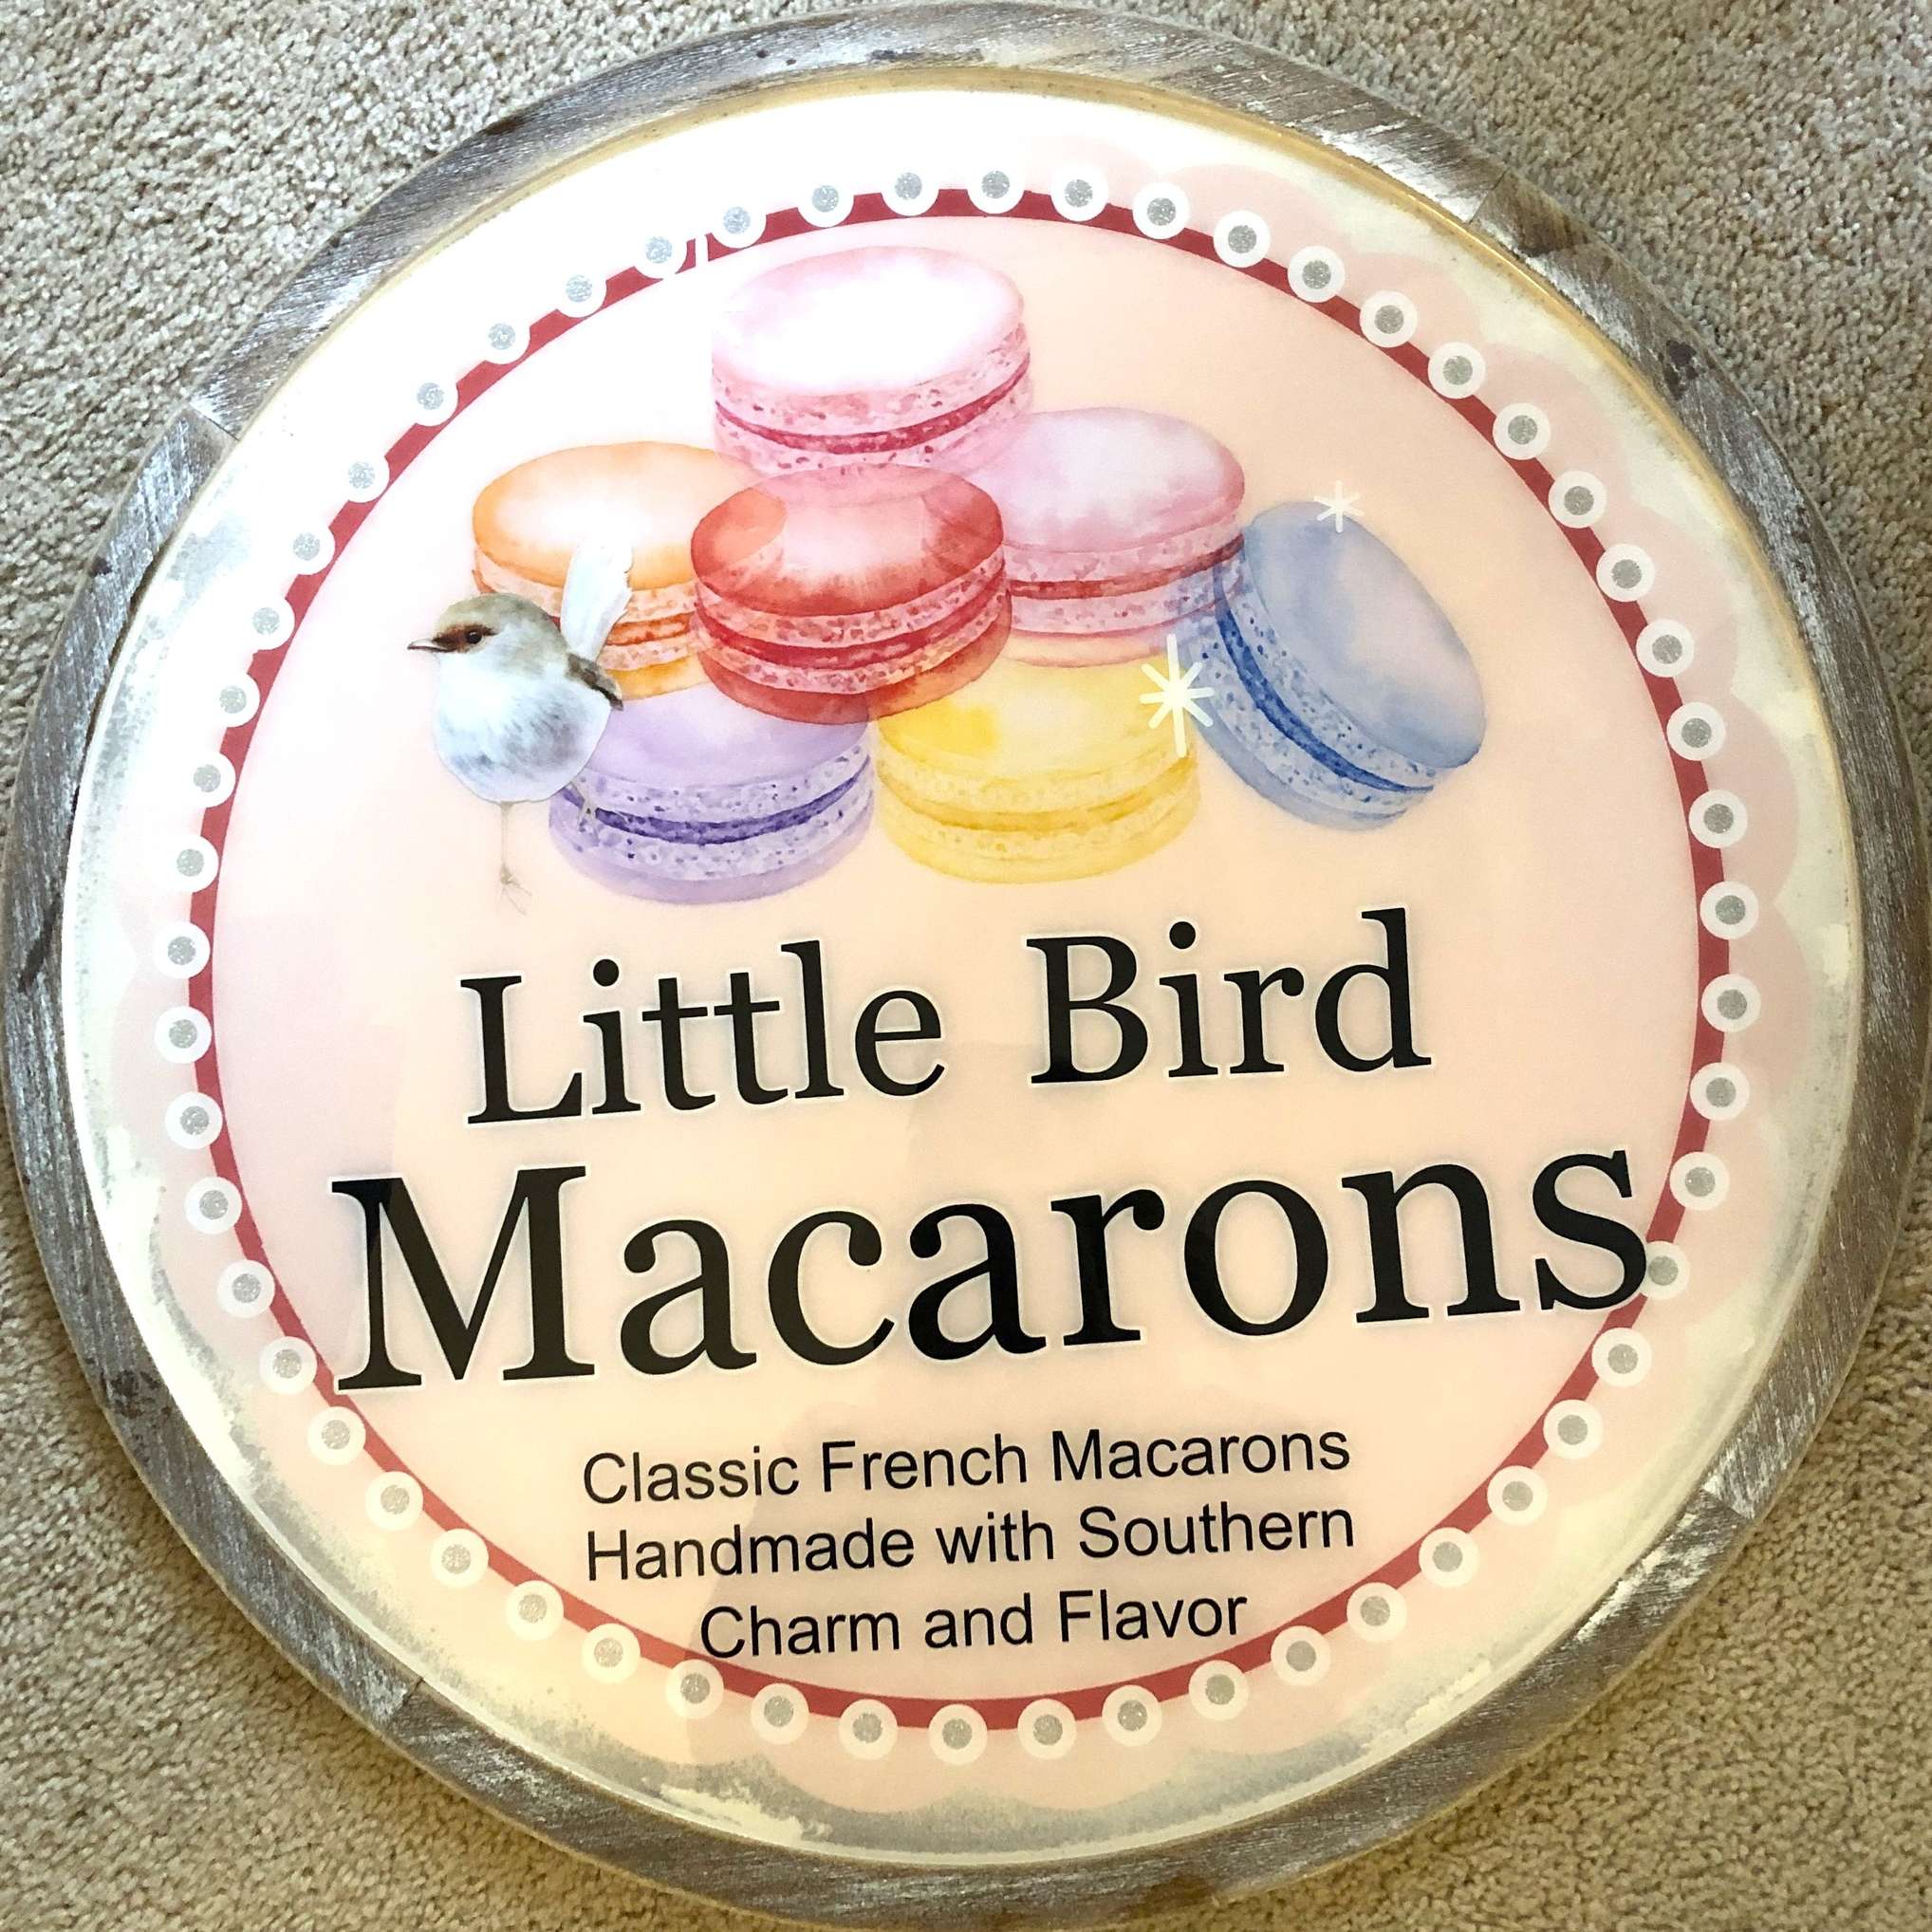 Little Bird Macarons